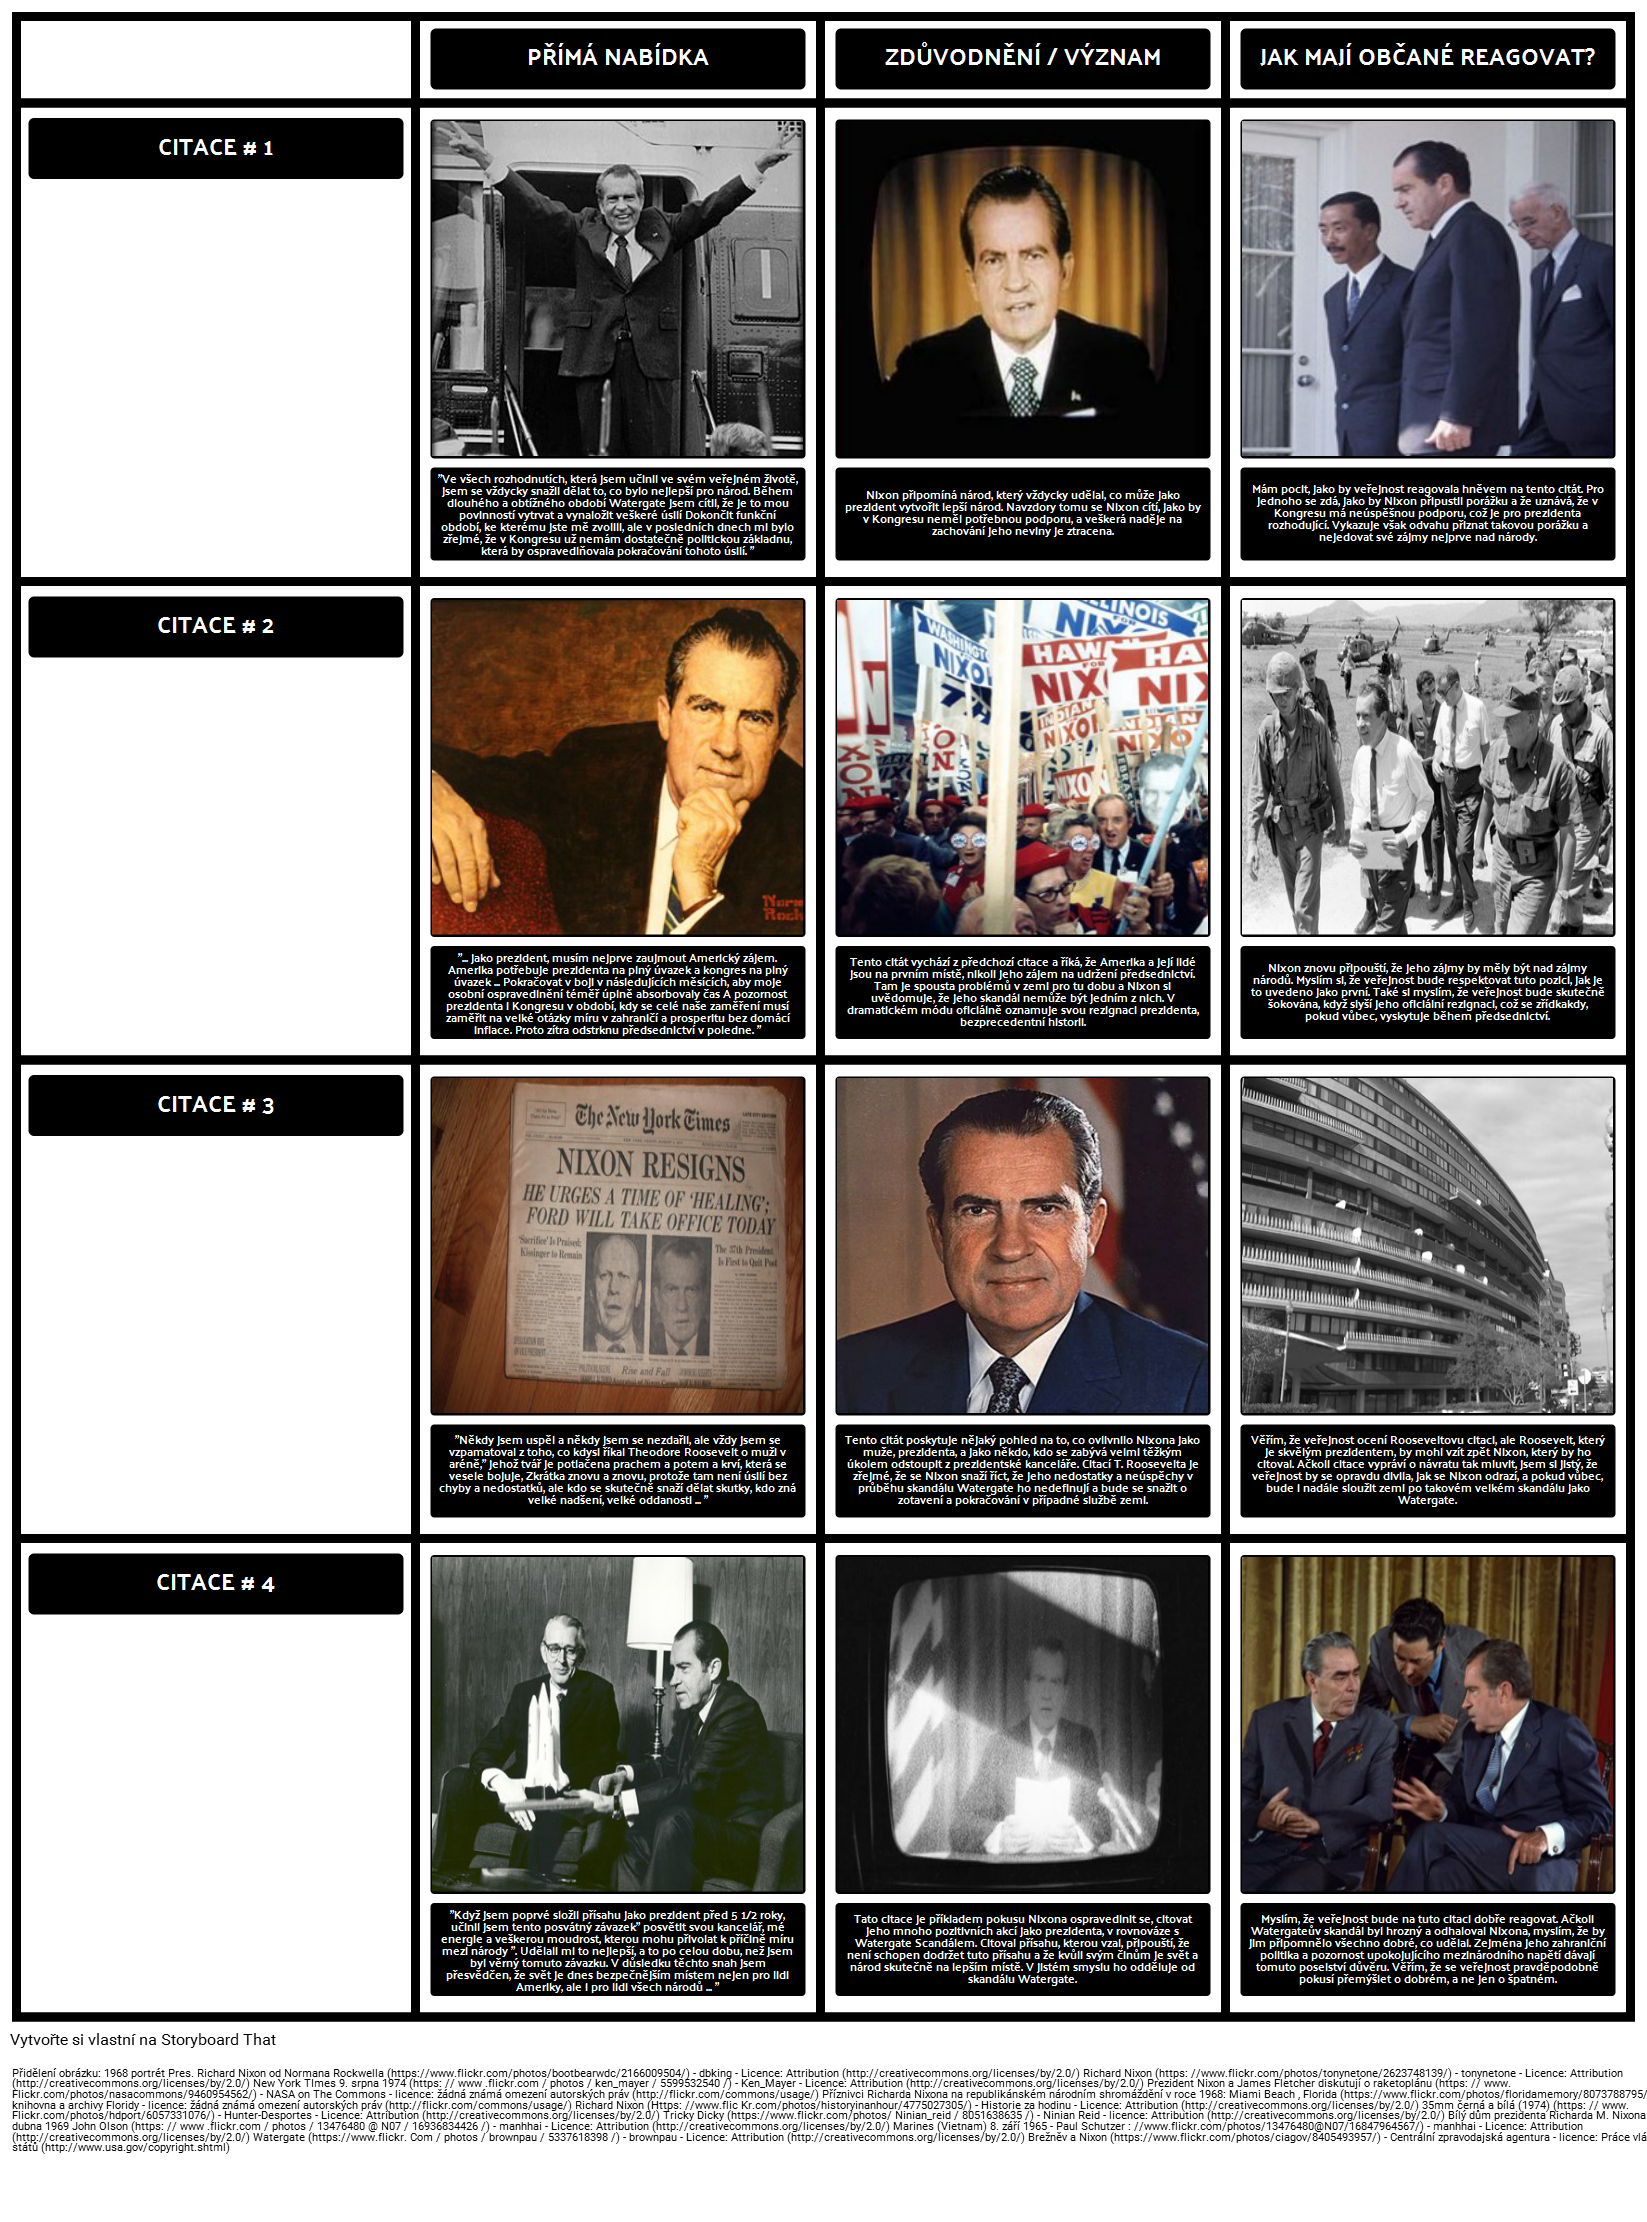 Předsednictví Richard Nixon - Nixon rezignace Projev 1974